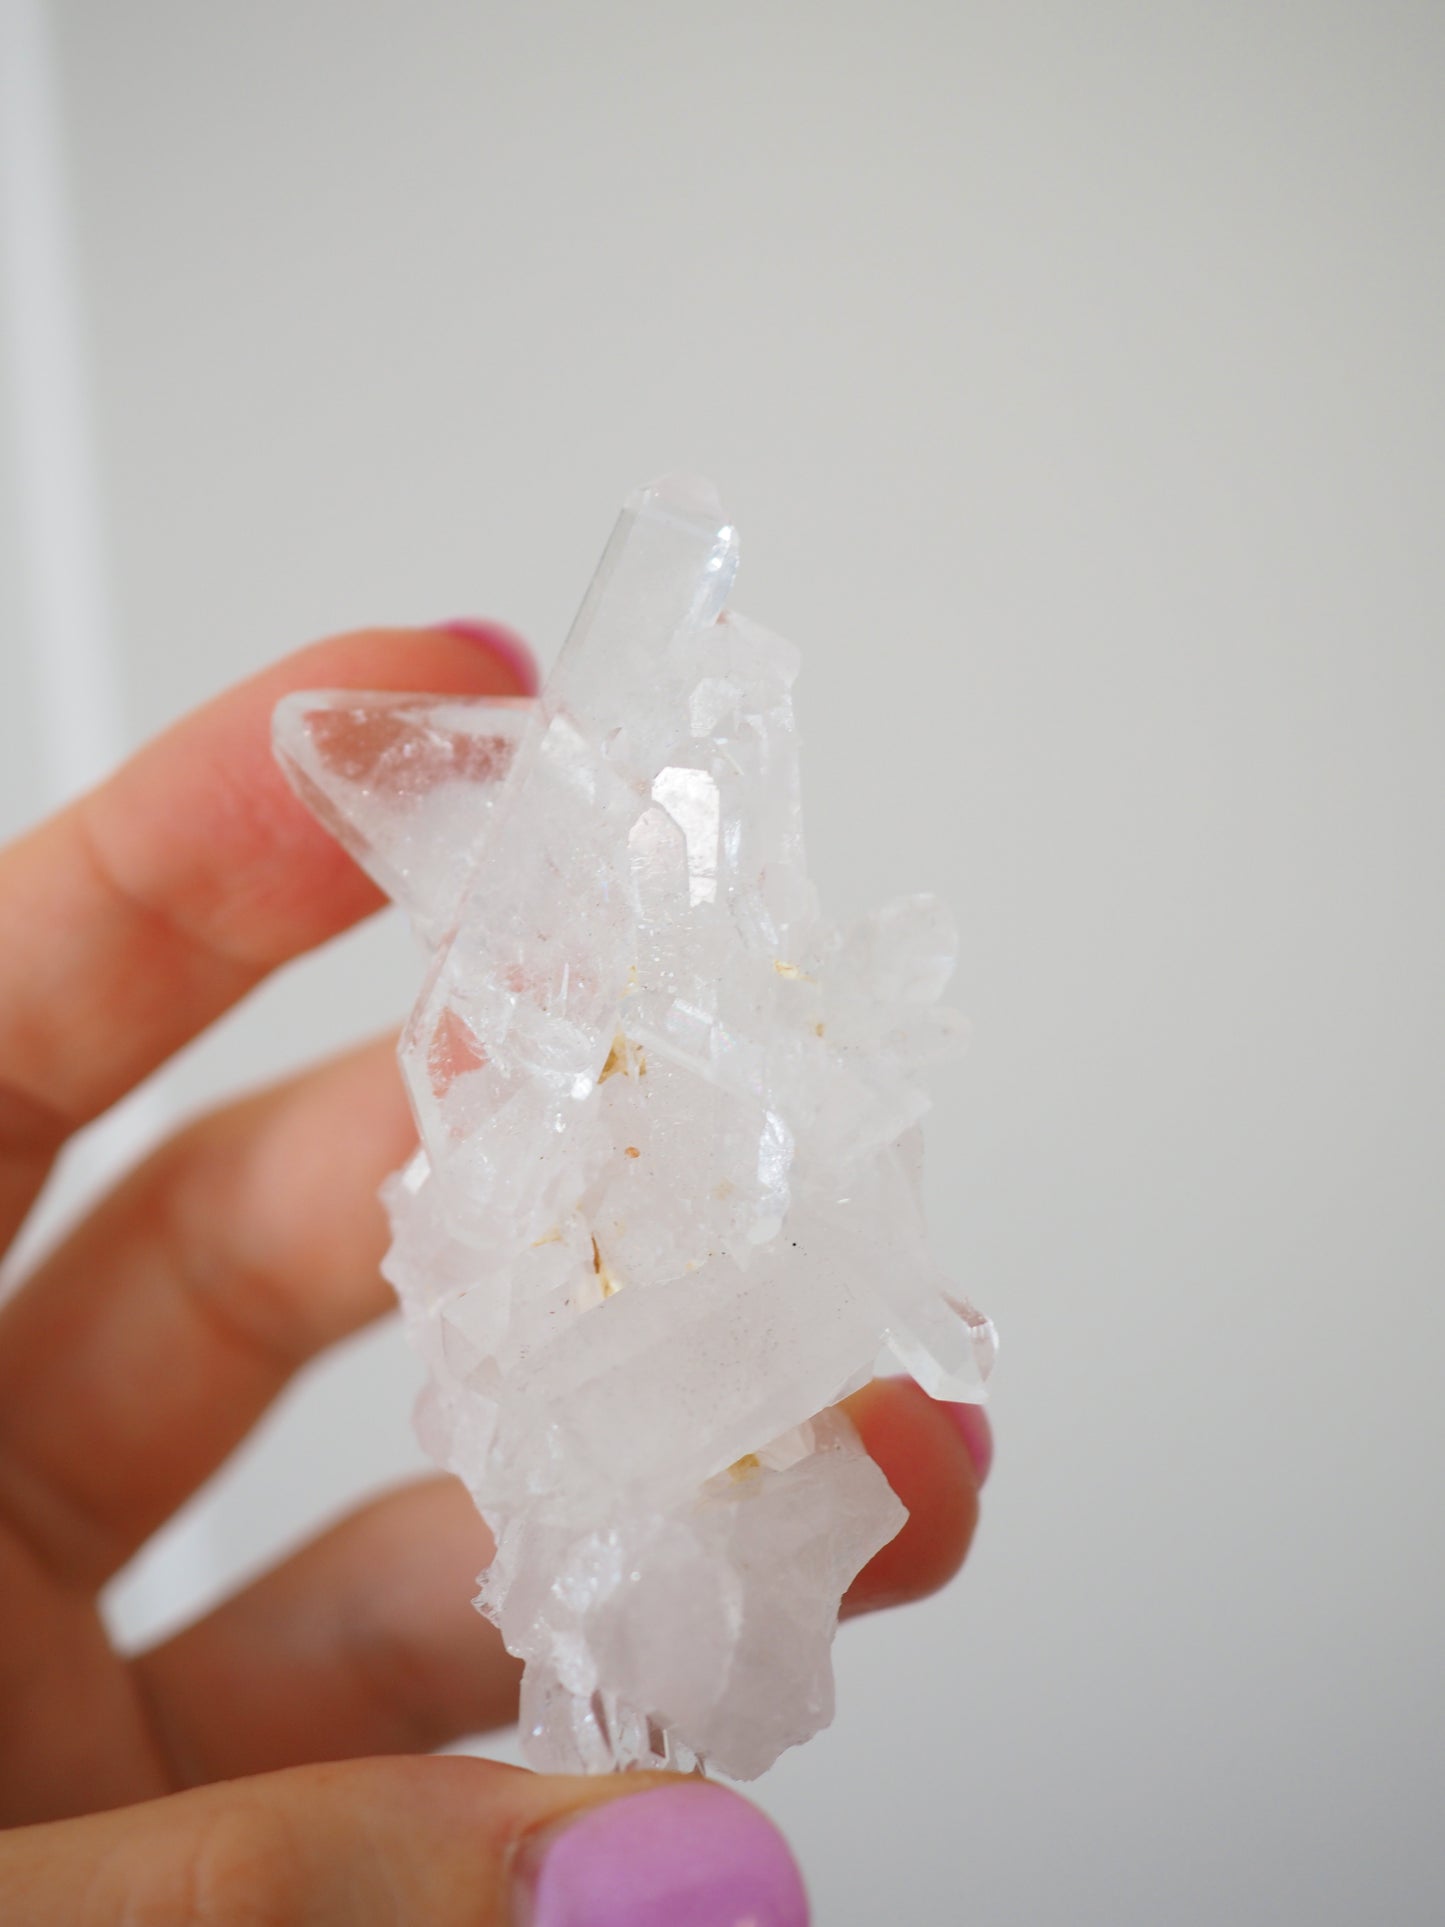 Bergkristall Cluster mit Regenbögen ca 7cm [28] - aus Minas Gerais Brasilien HIGH QUALITY